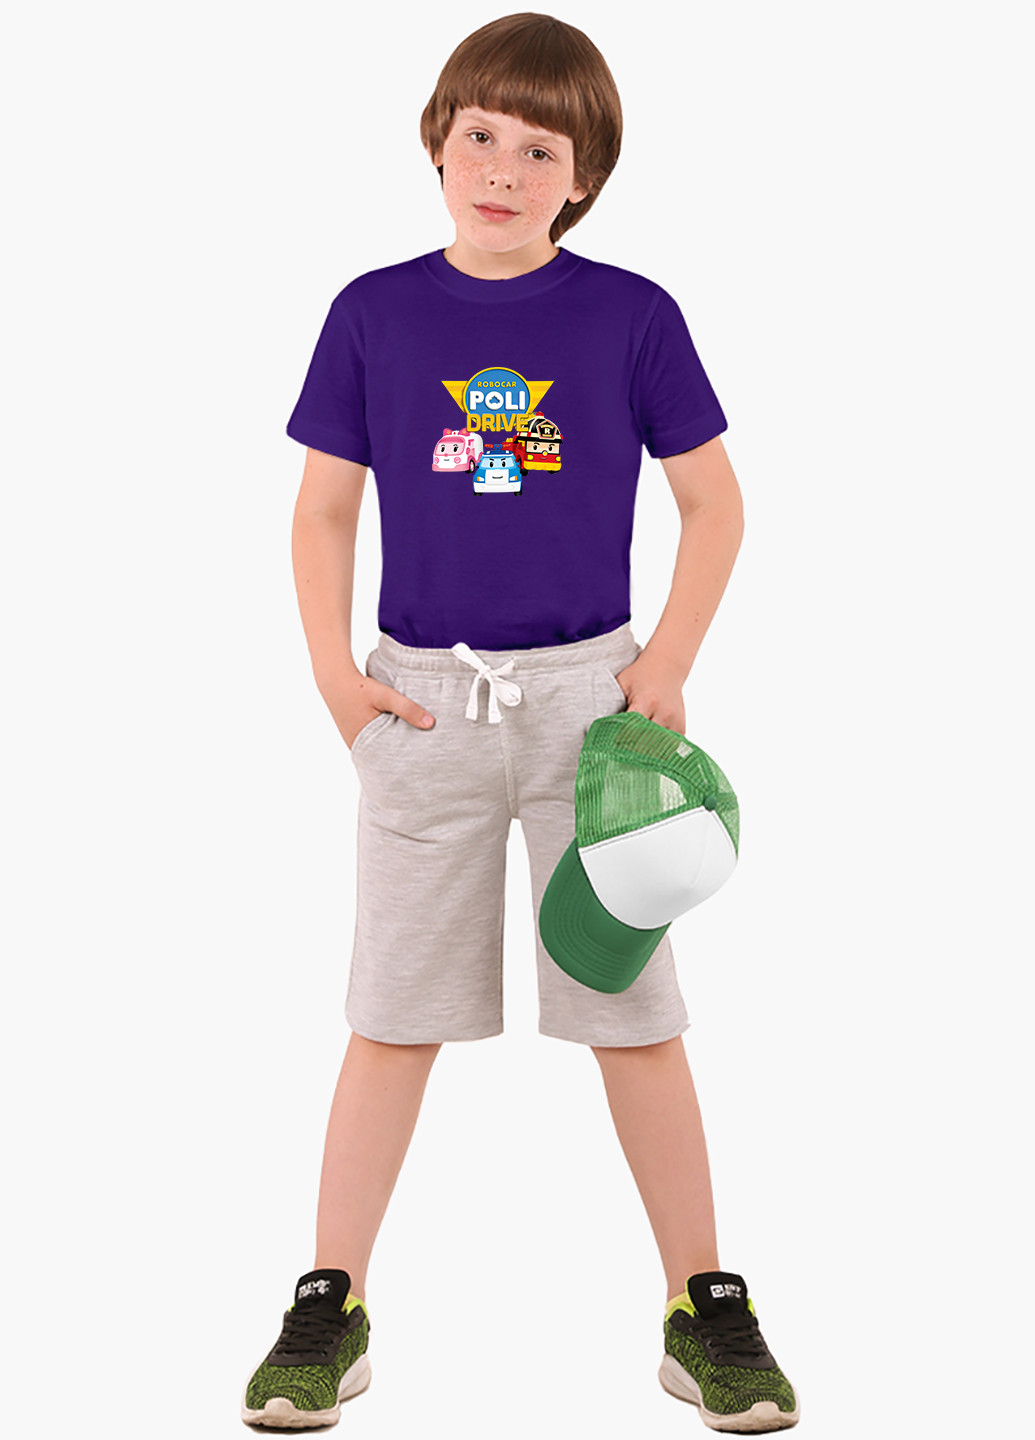 Фіолетова демісезонна футболка дитяча робокар полі (robocar poli) (9224-1617) MobiPrint